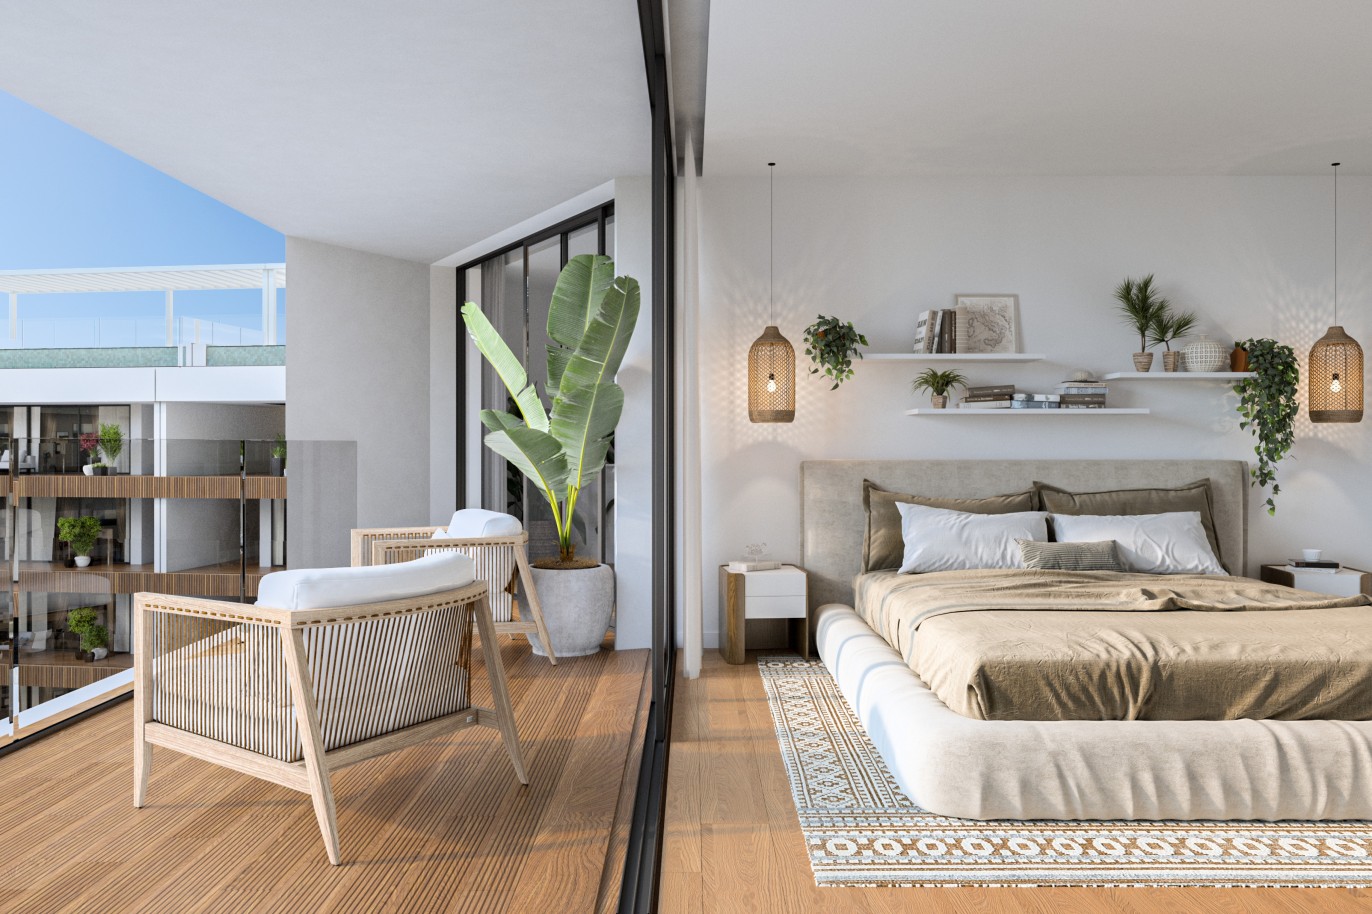 Appartements neufs avec vue sur mer, 1, 2 & 3 chambres, à vendre à Olhão, Algarve_243692